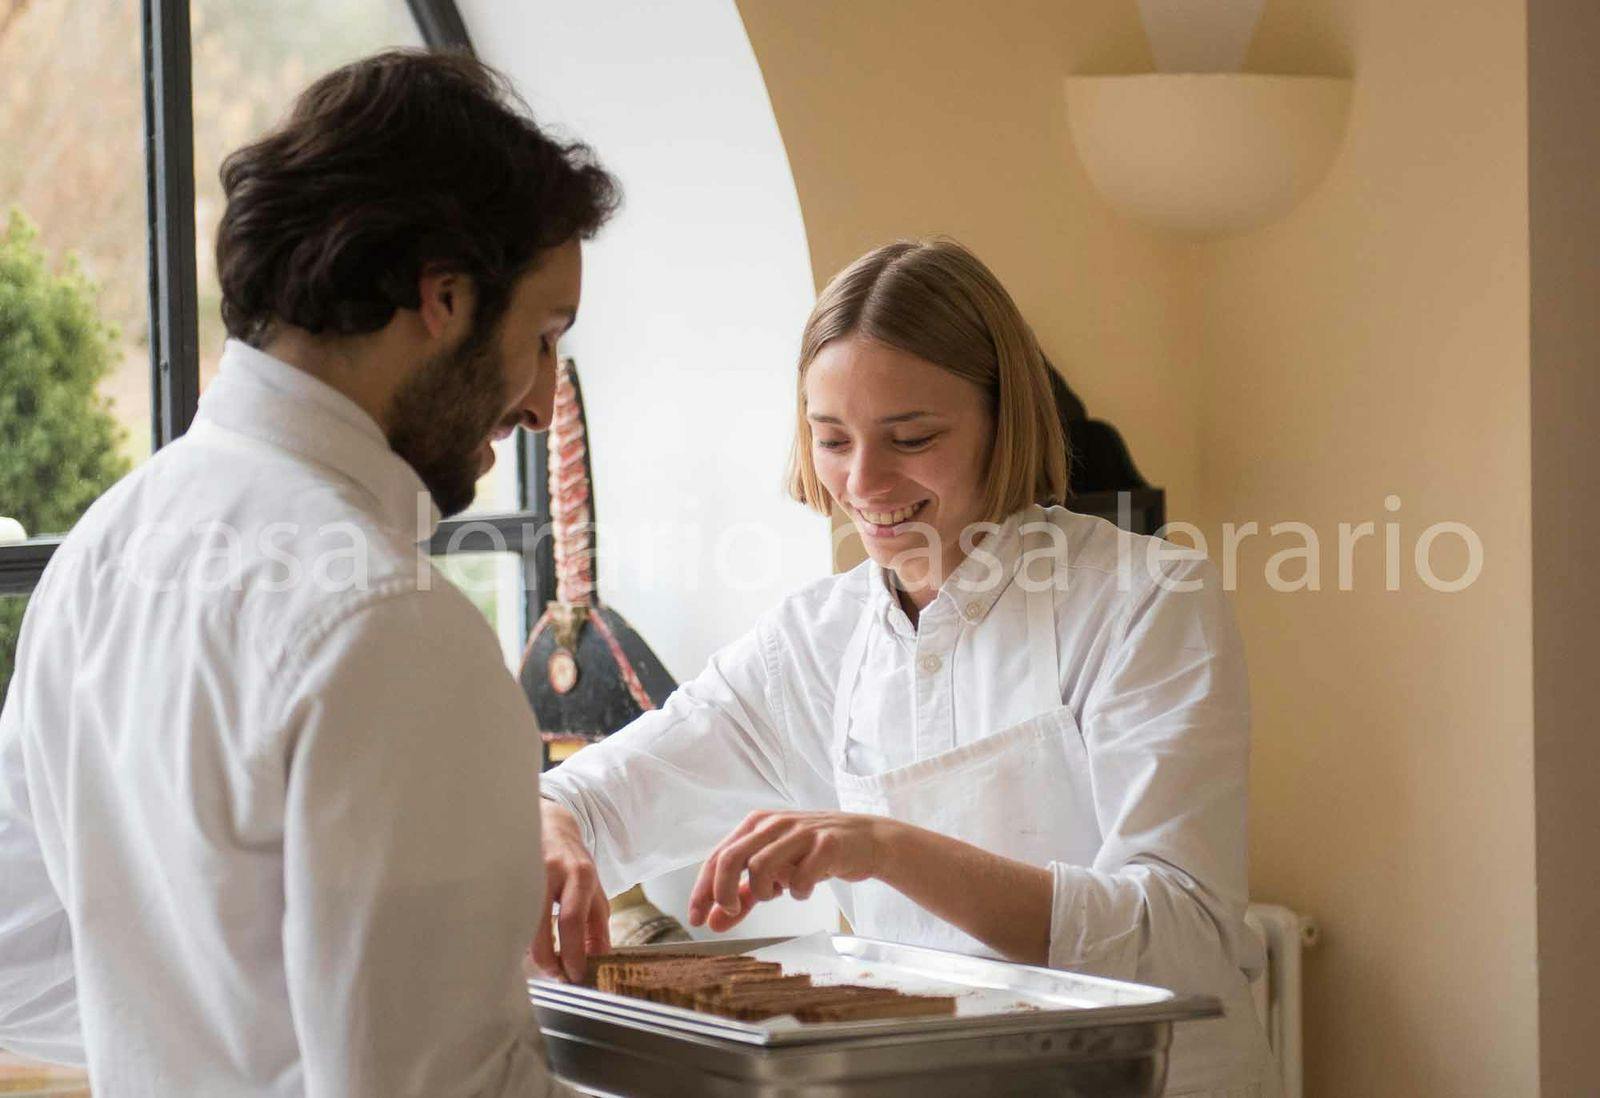 Floriano Pellegrino e Isabella Potì ai fornelli di Casa Lerario. Per Forbes tra i 30 under 30, sezione Art, più promettenti al mondo